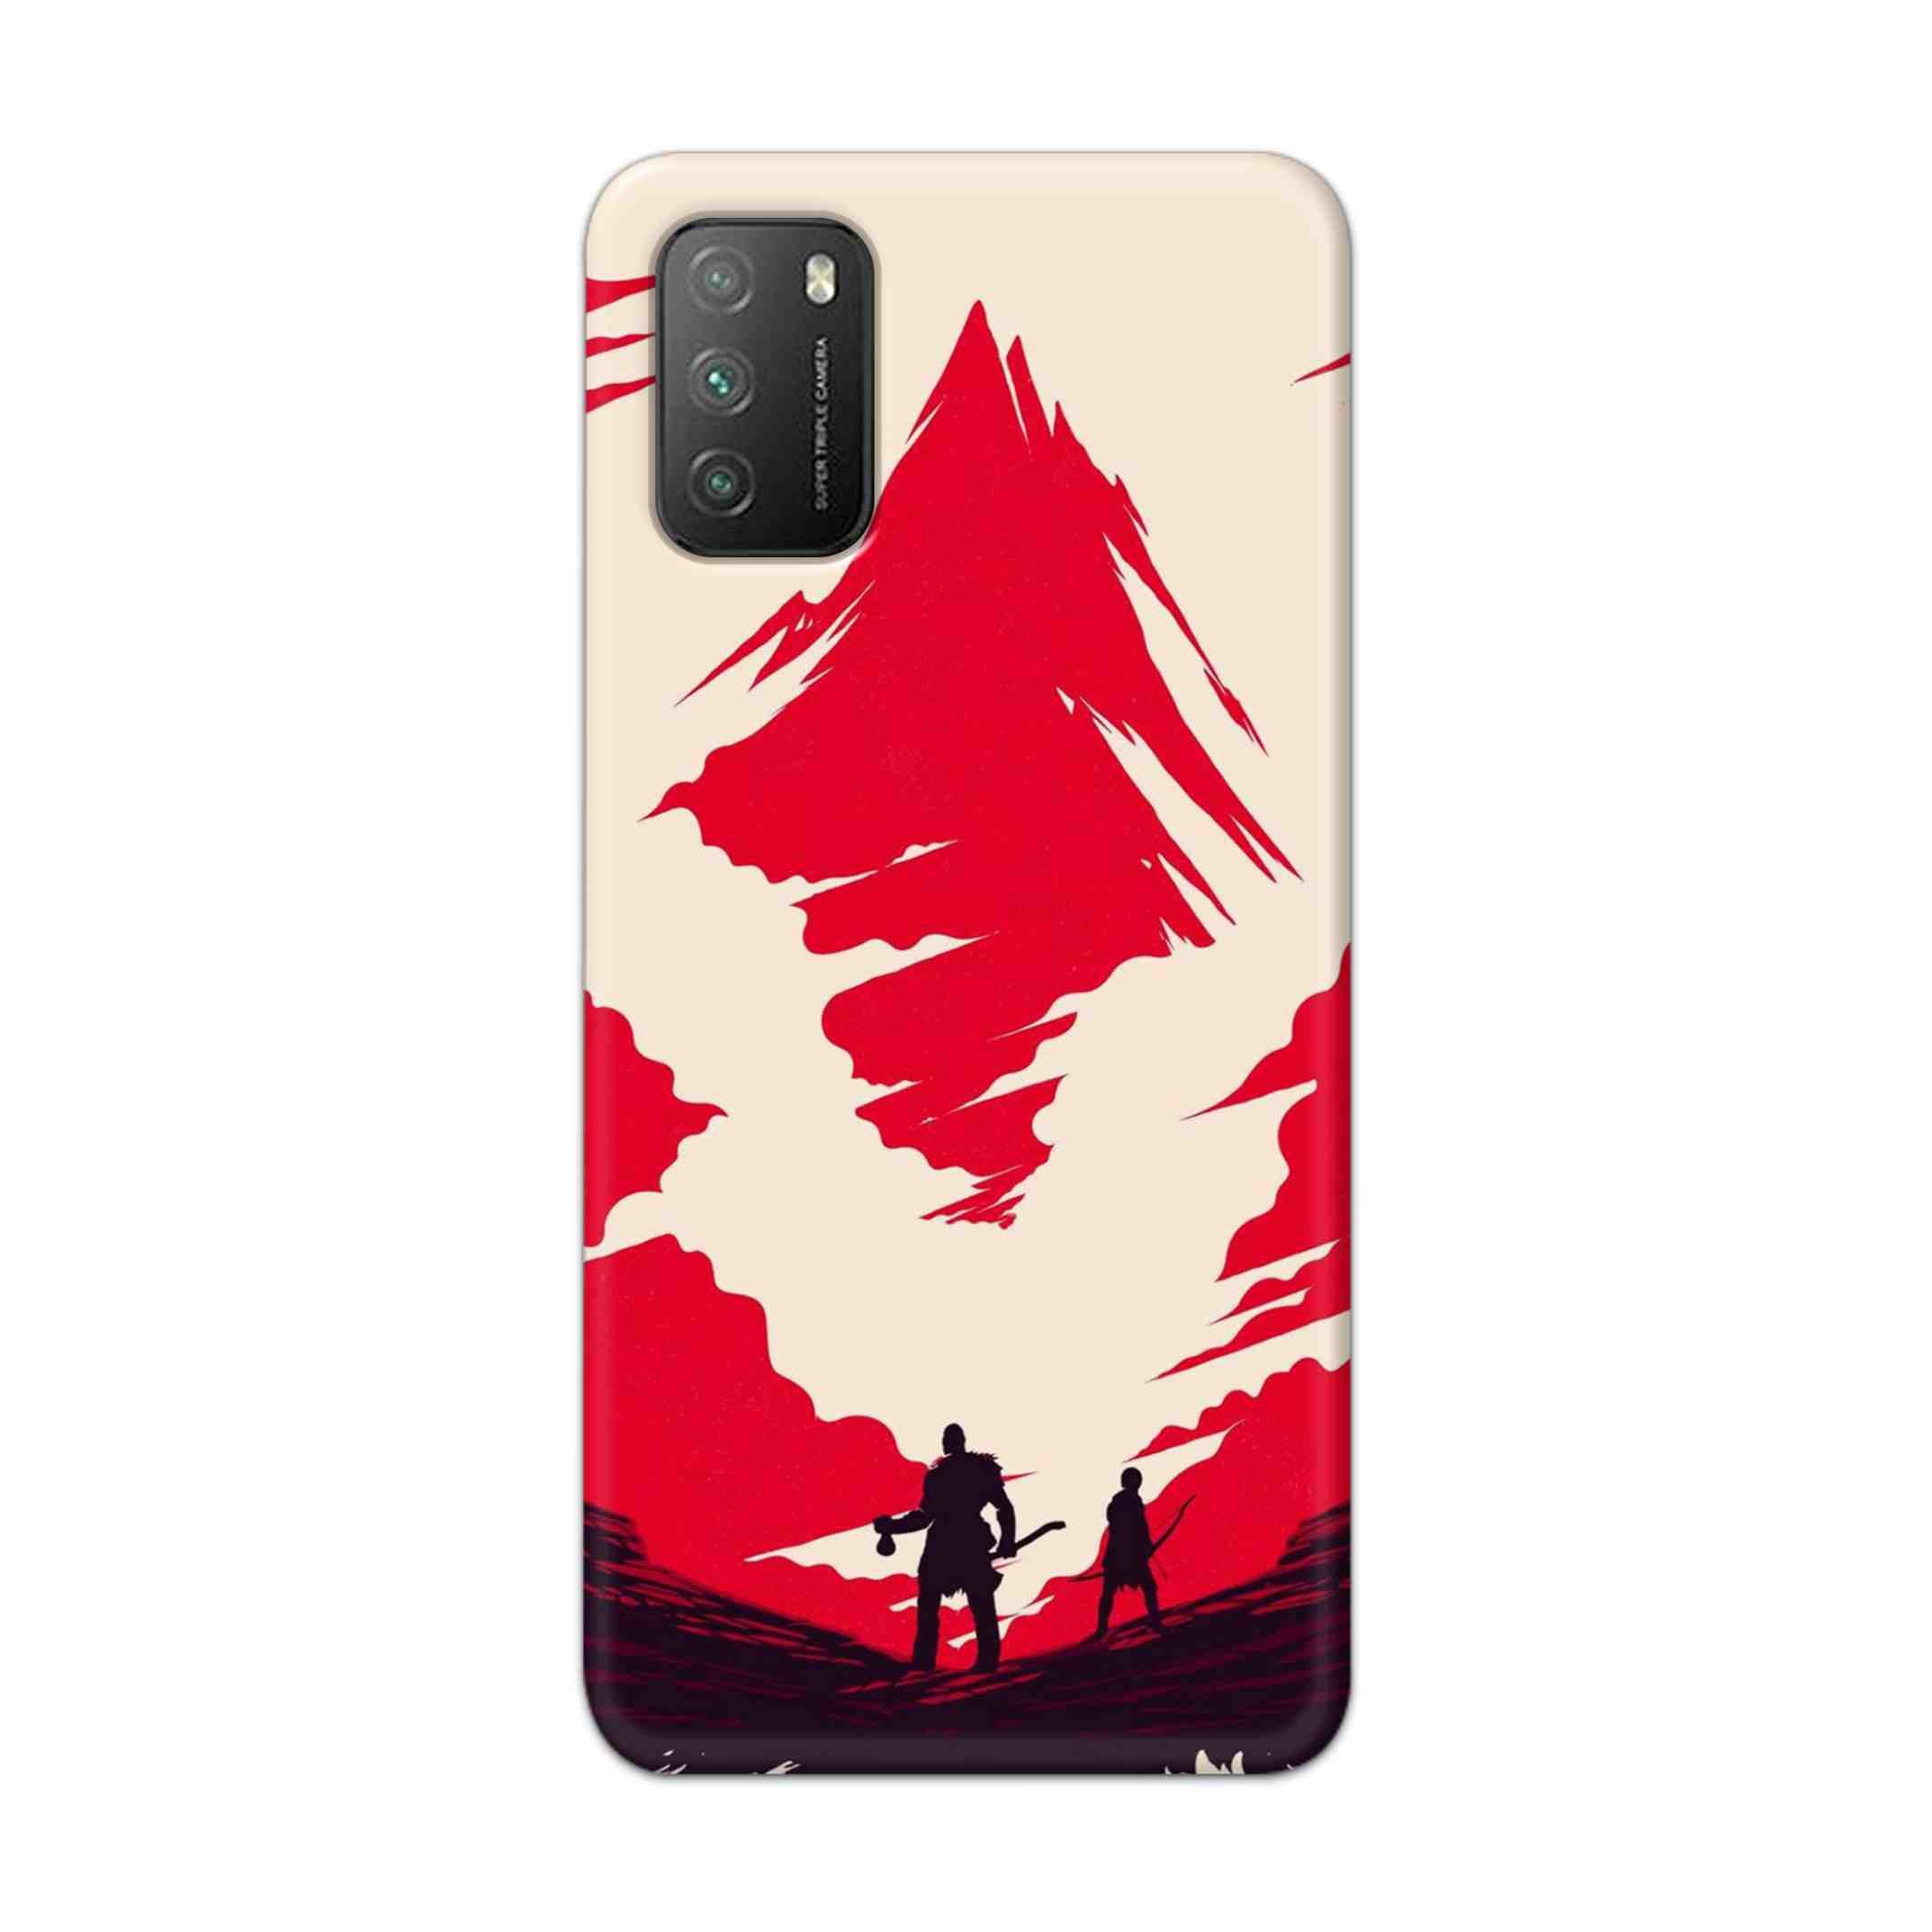 Buy God Of War Art Hard Back Mobile Phone Case Cover For Poco M3 Online